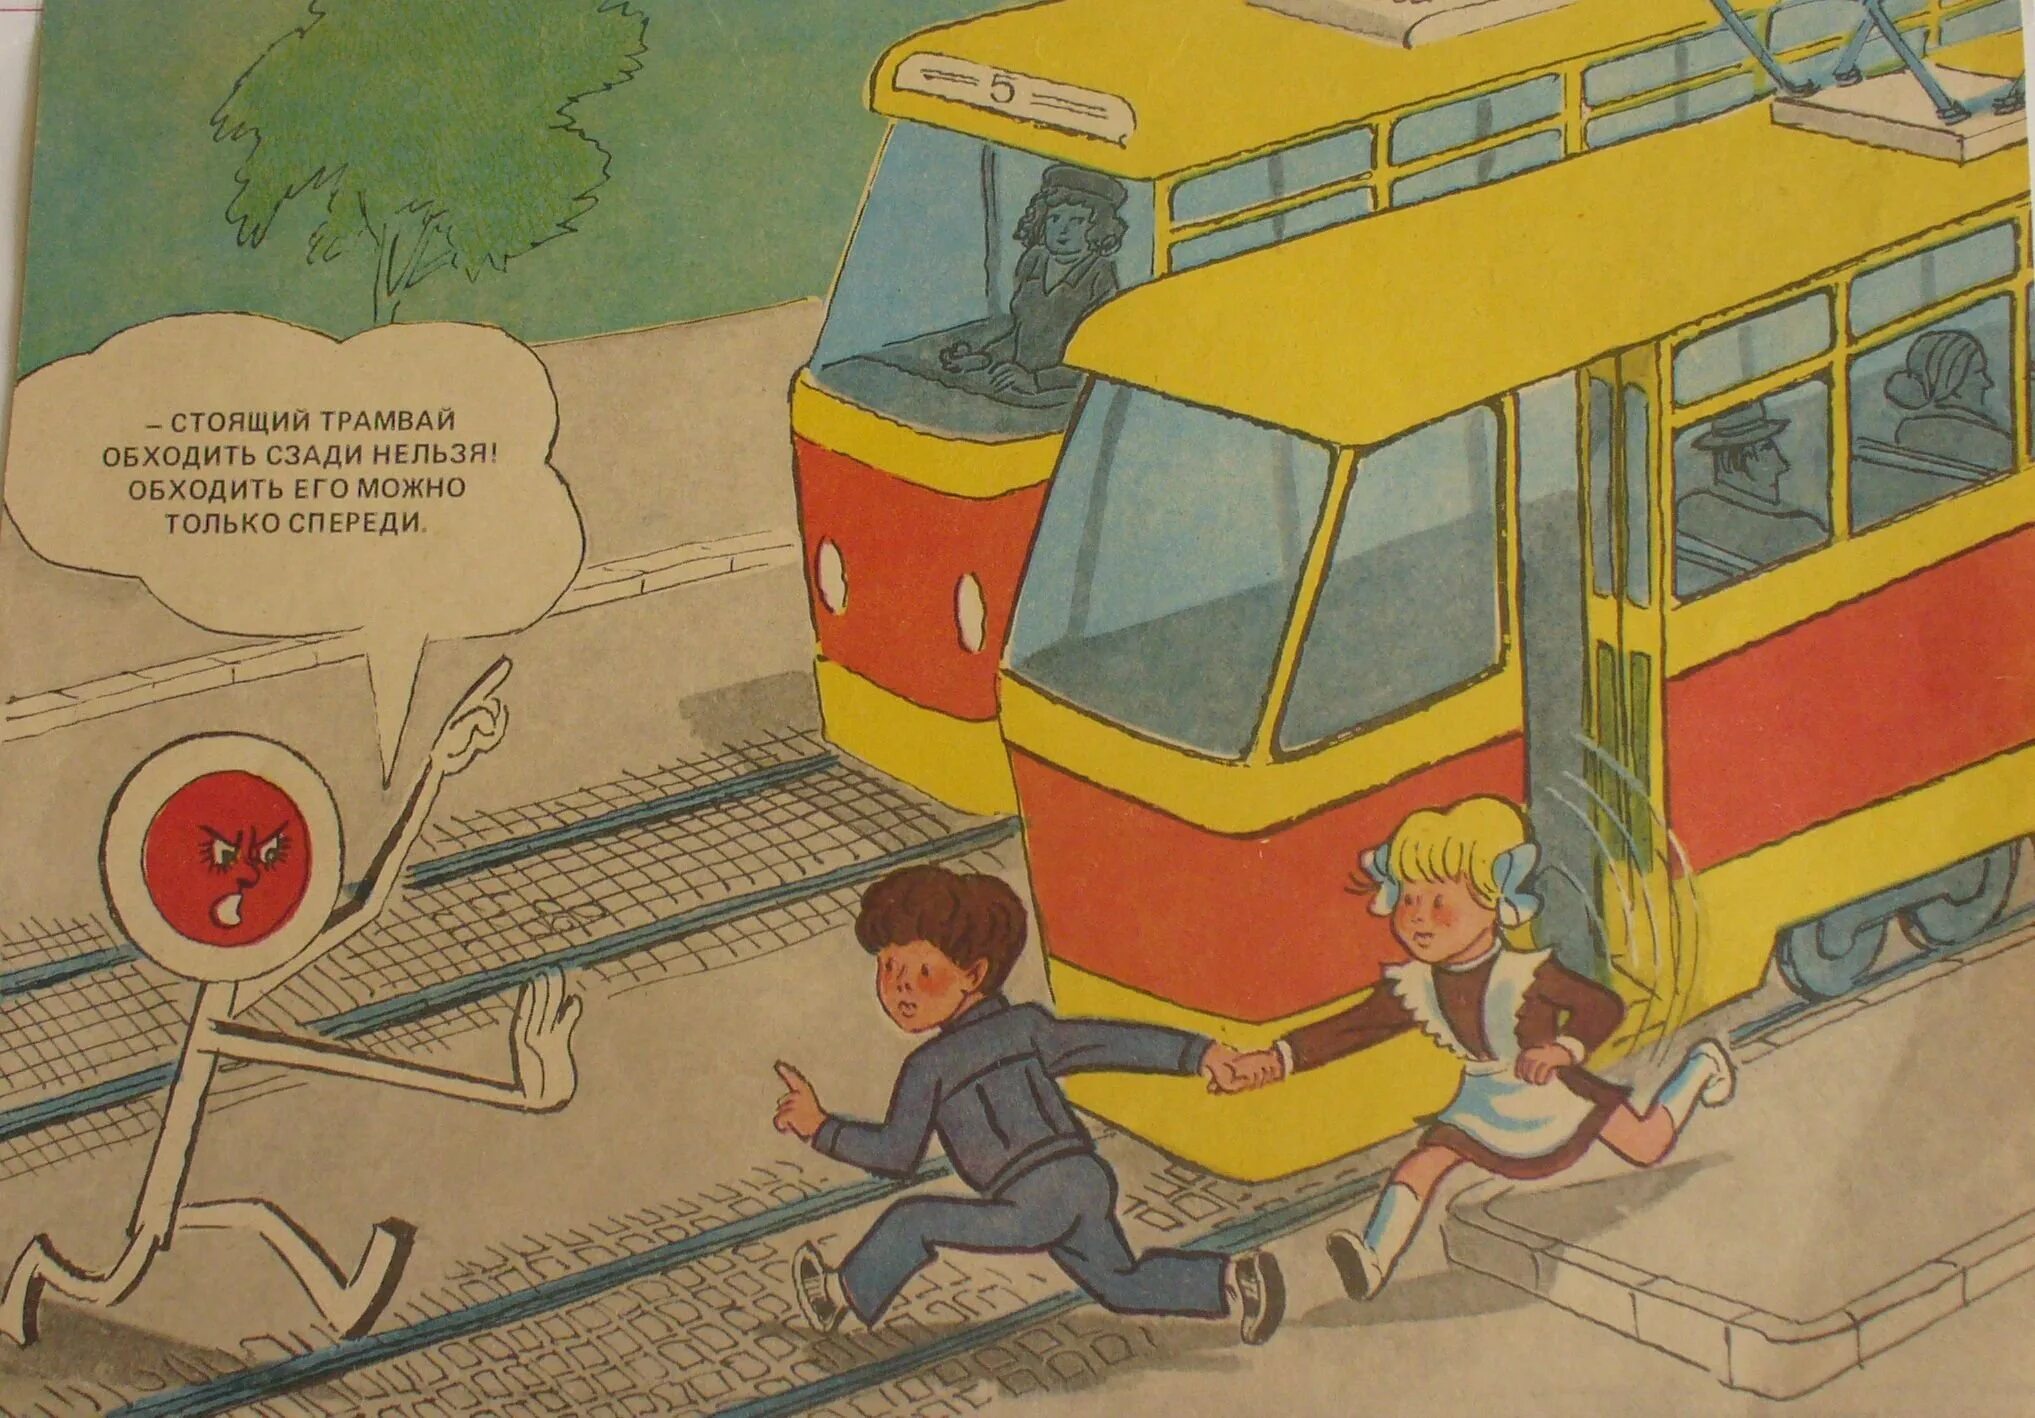 Обходить трамвай. Трамвай иллюстрация. Трамвай иллюстрация для детей. Трамвай обходи спереди.